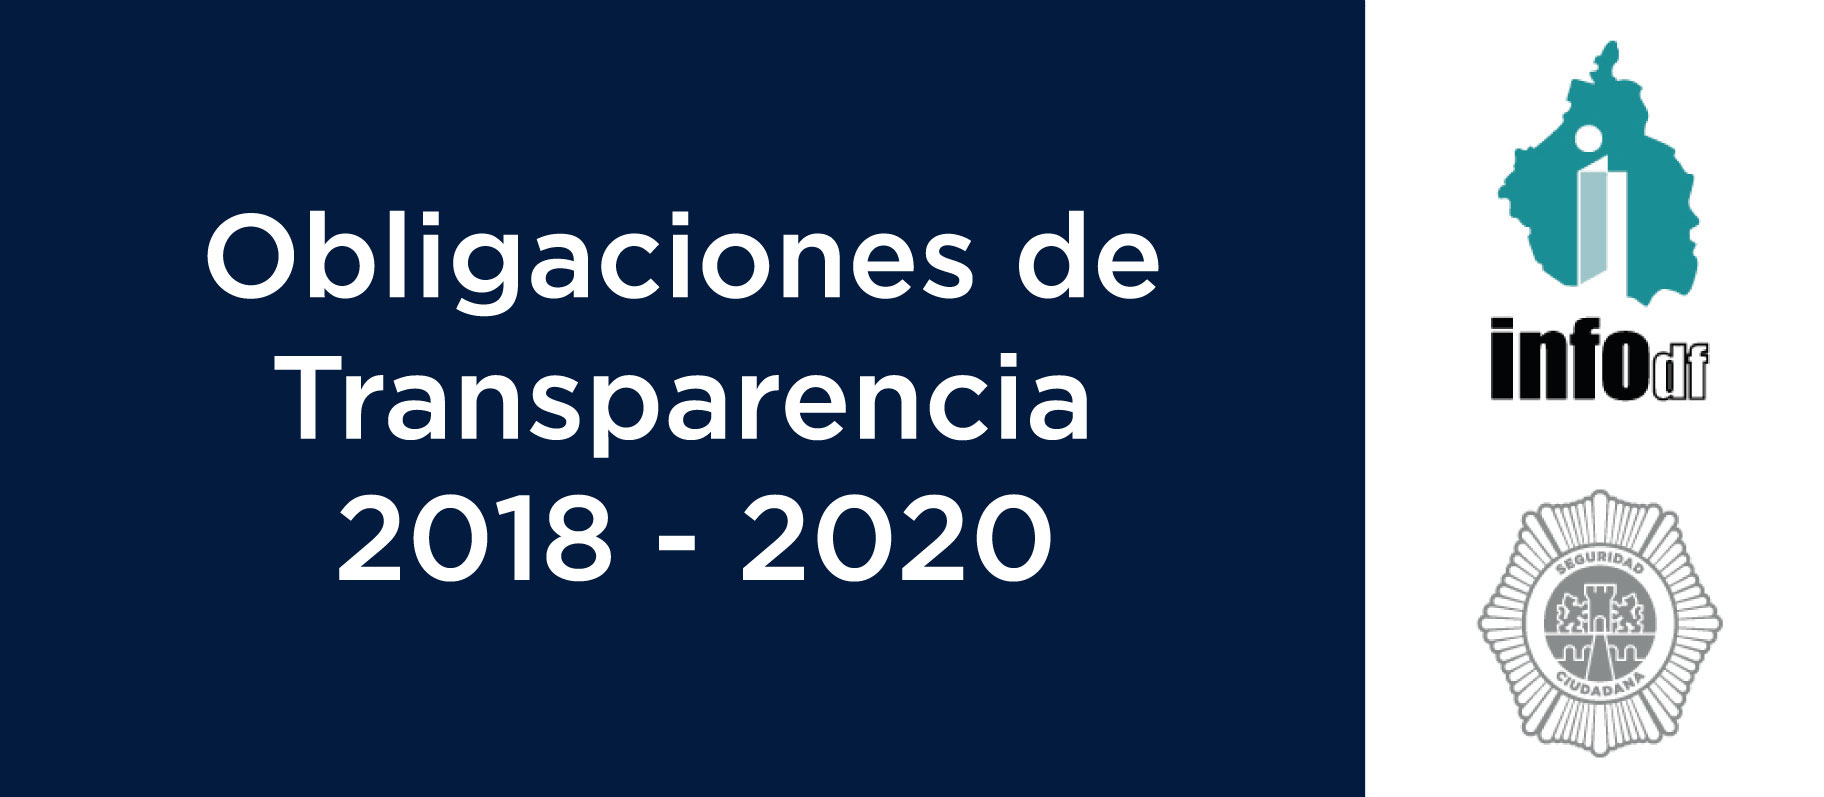 Obligaciones de Transparencia 2018 - 2020